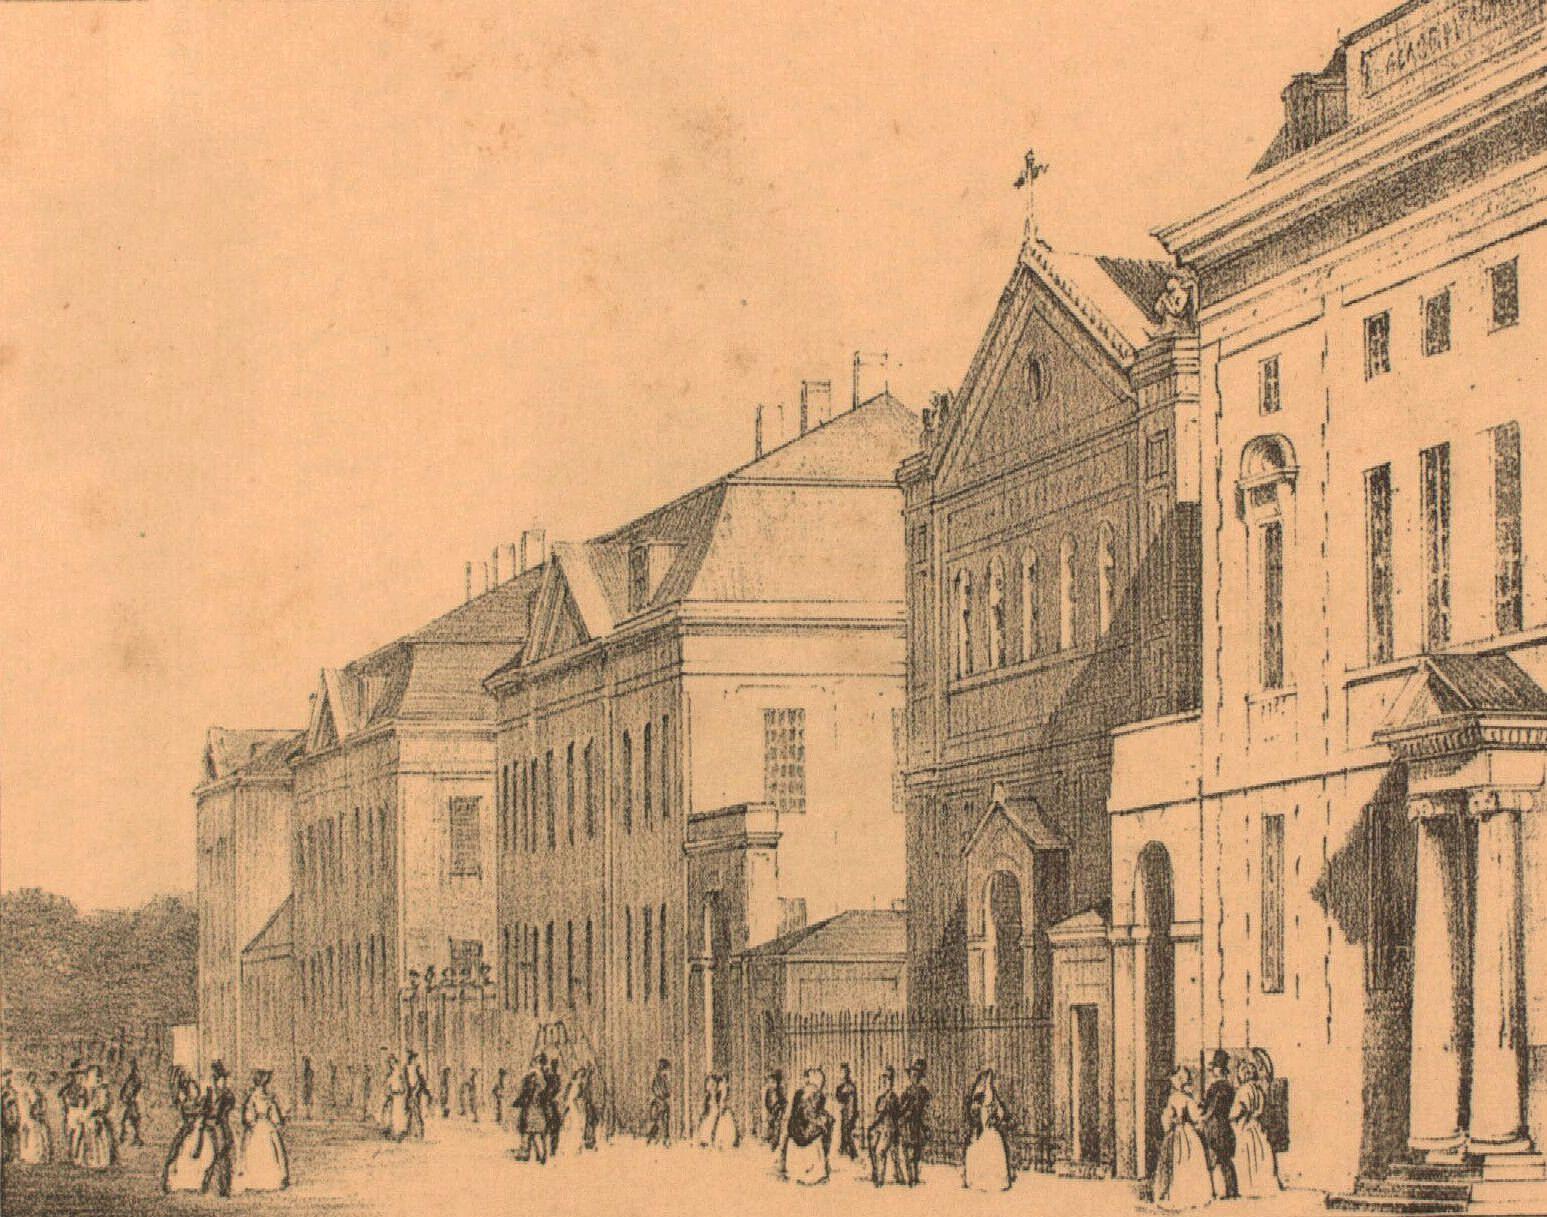 Kirurgisk Akademi (yderst th) i Bredgade ca. 1840. Længst tv. ses Frederiks Hospital.